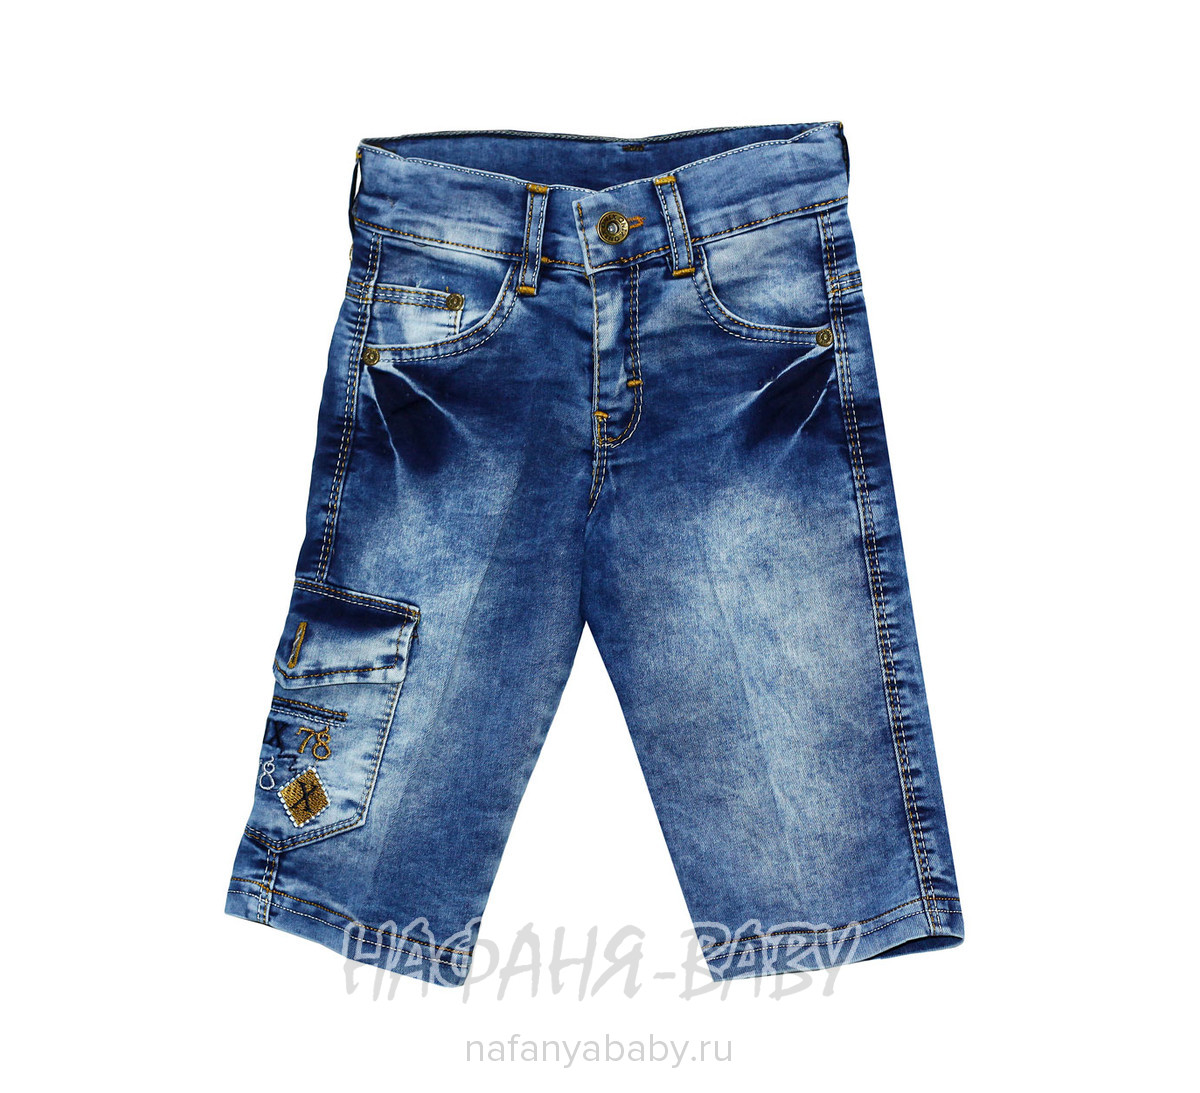 Подростковые джинсовые шорты ONIX арт: 11011, 10-15 лет, 5-9 лет, оптом Турция